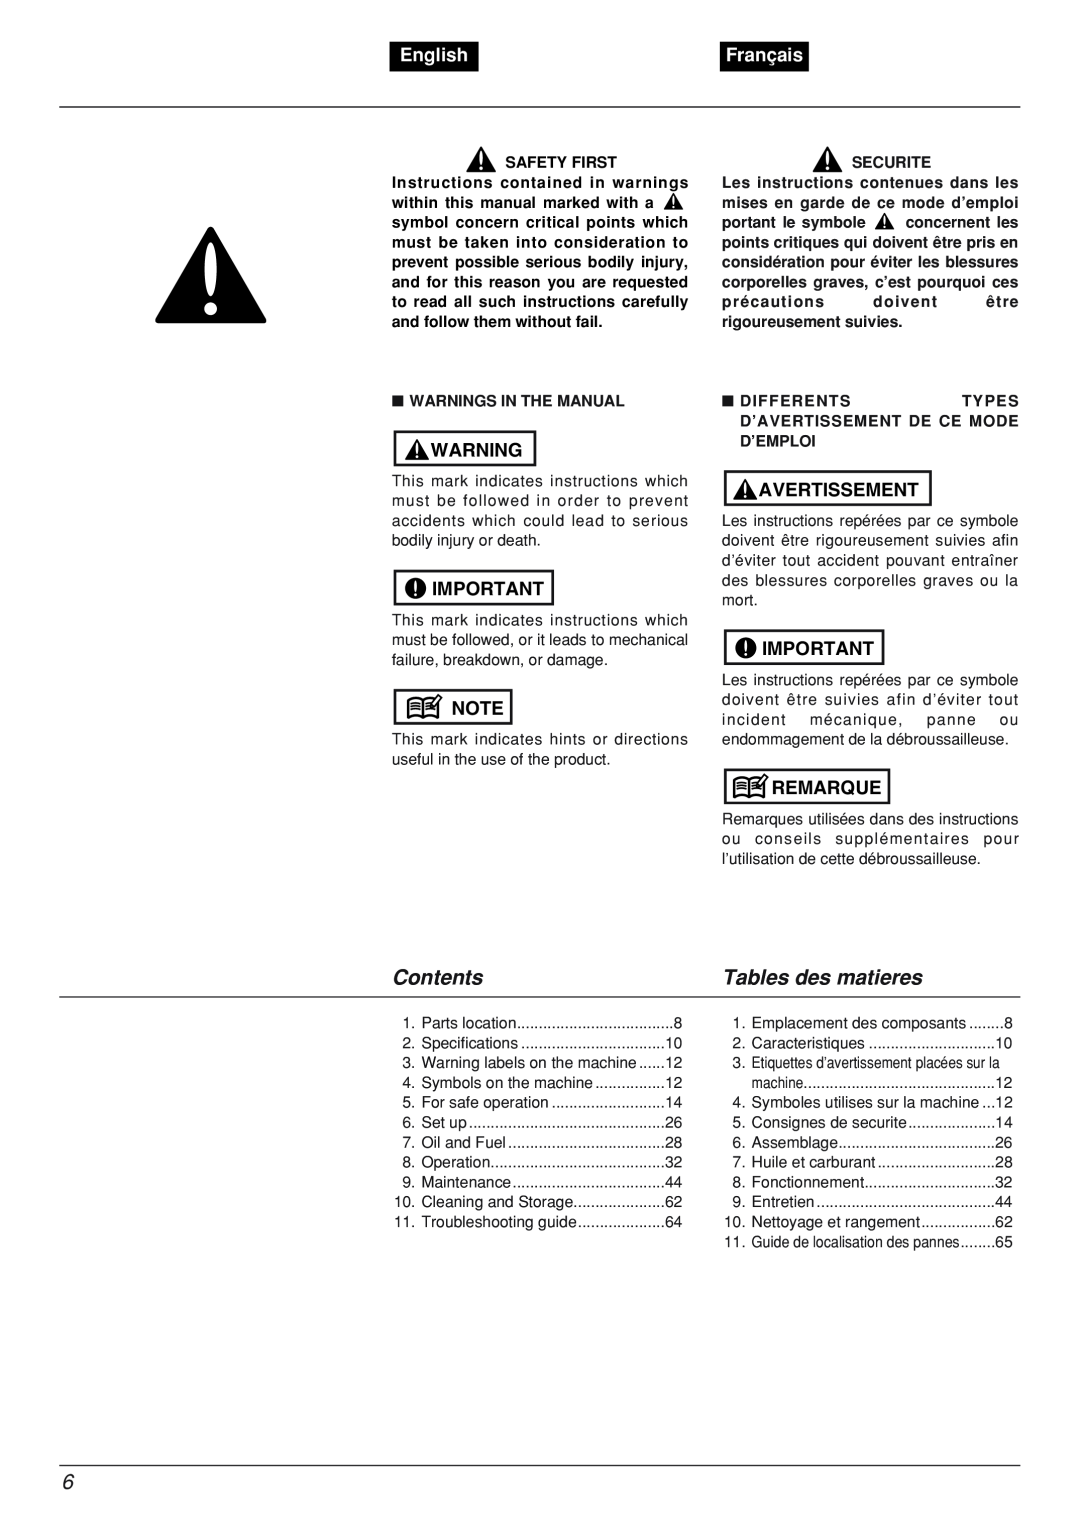 Zenoah BCX2601DL manual Contents, Tables des matieres, English, Français, Avertissement, Remarque 